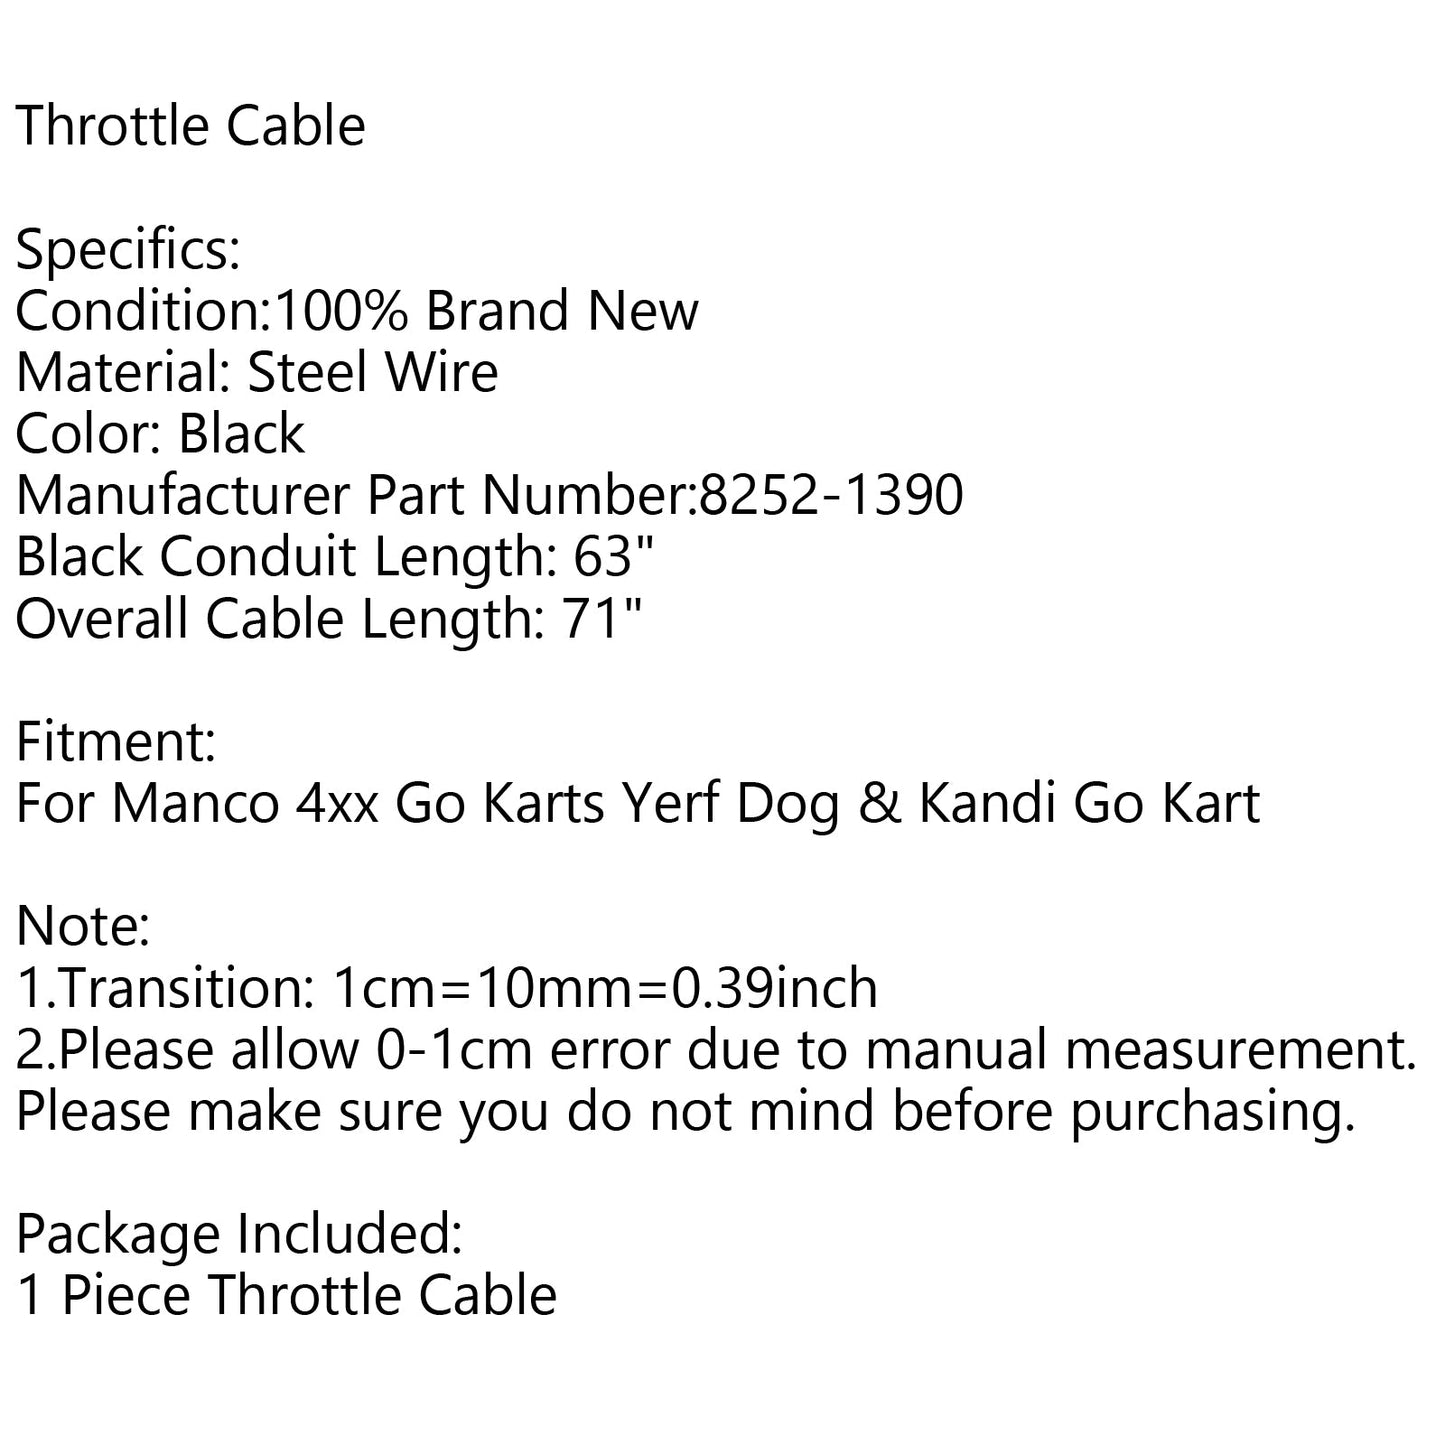 Throttle Cable For 71"/63" Manco 4xx Go Karts Yerf Dog & Kandi Go Kart